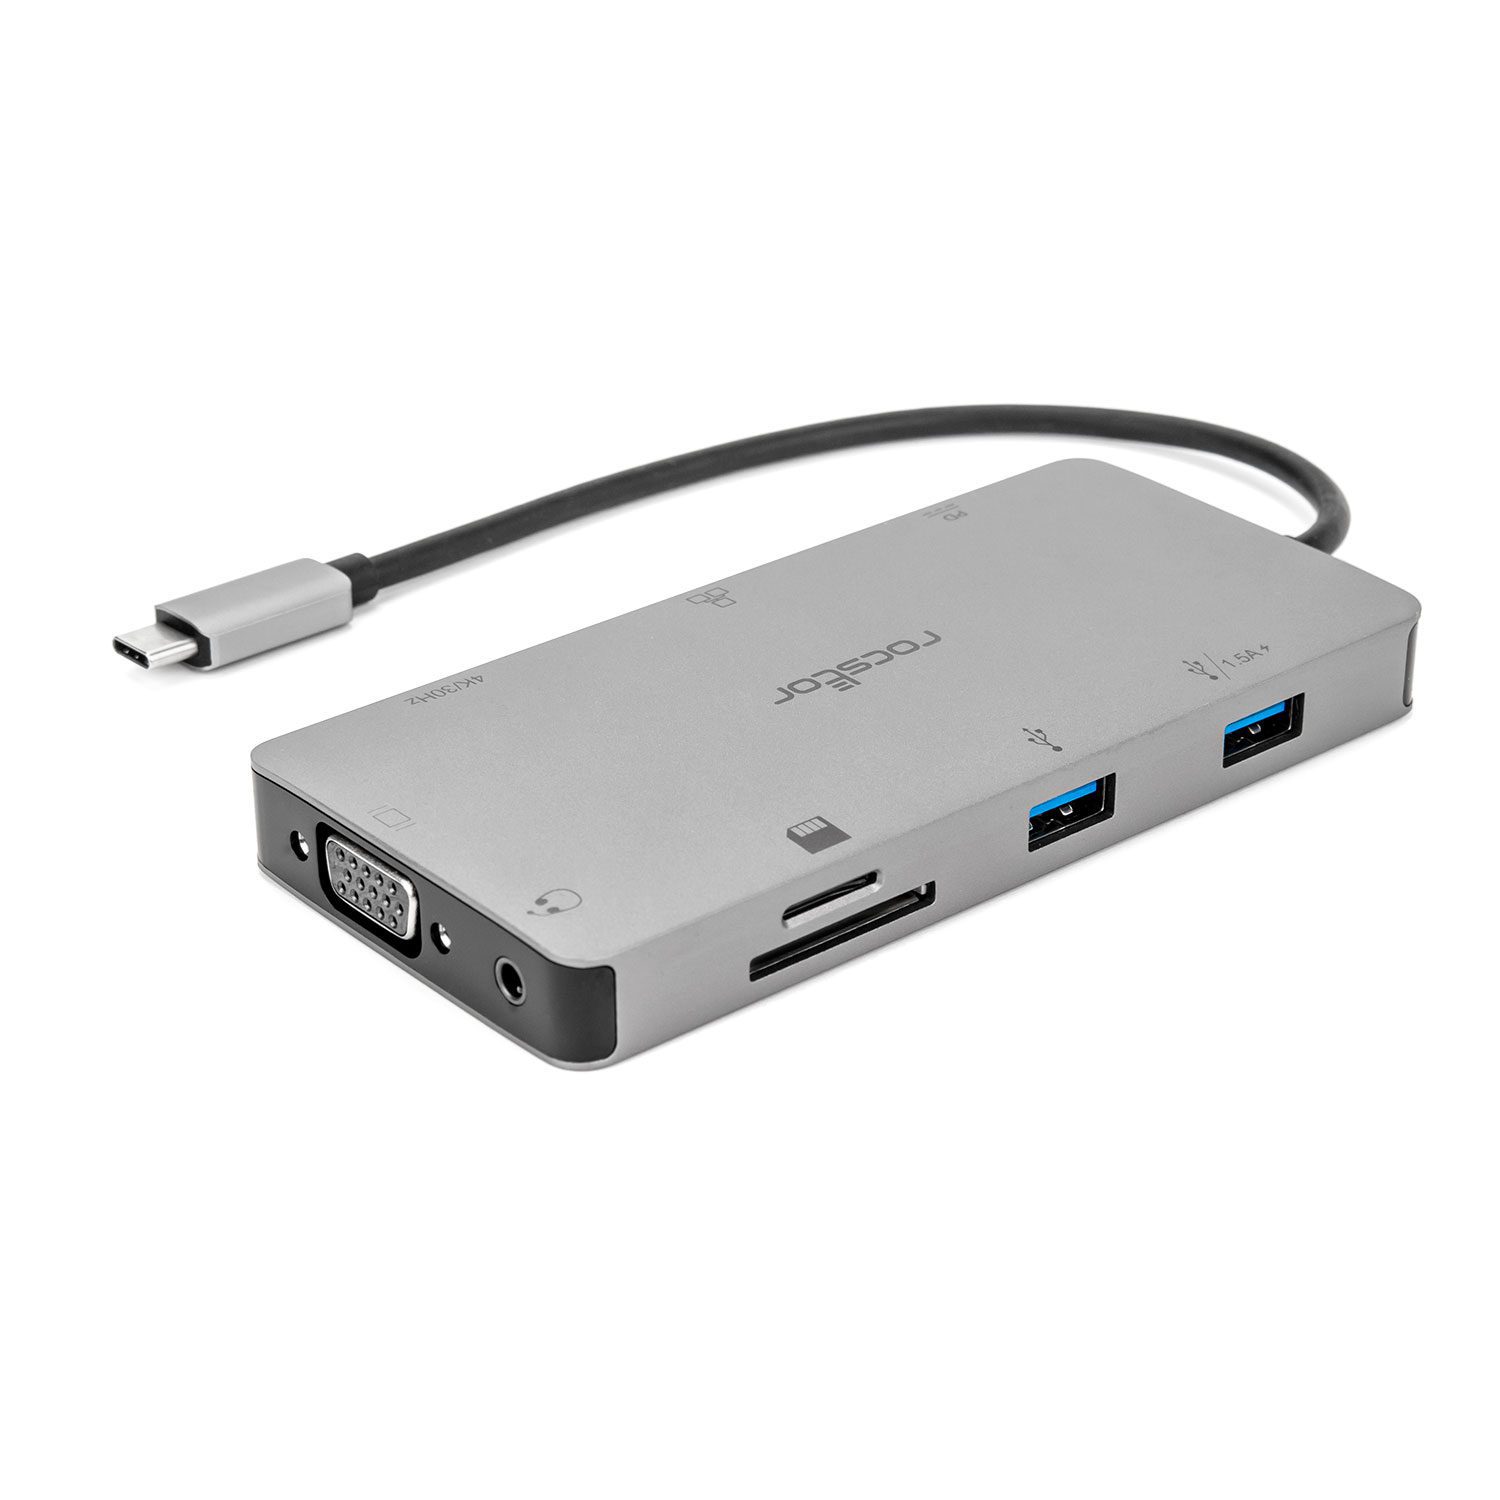 Hub USB-C : le meilleur dock pour votre PC portable (MacBook, Windows)